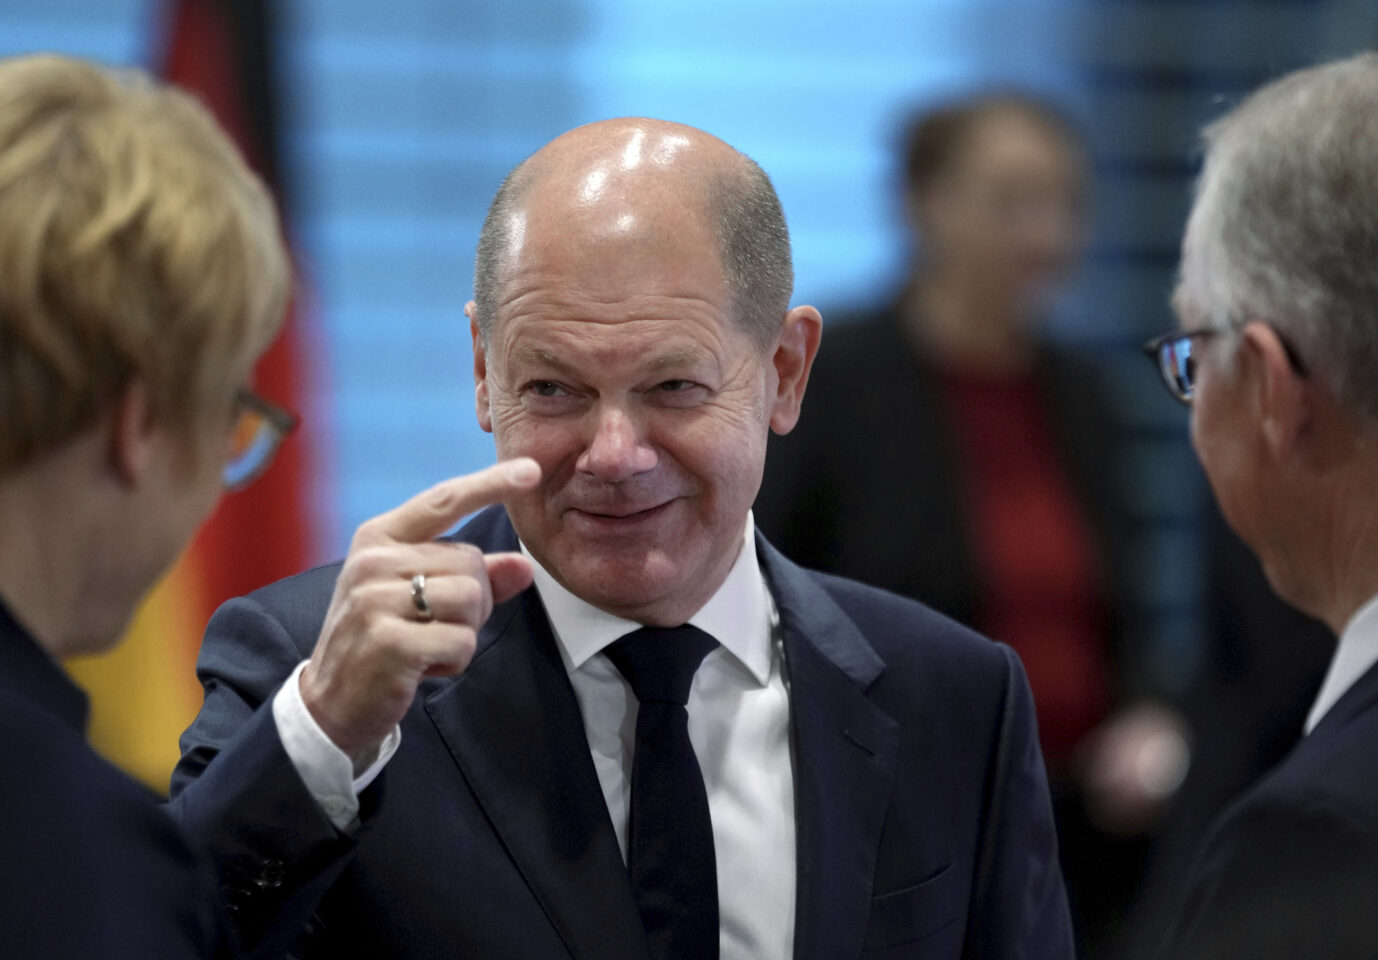 Bundeskanzler Olaf Scholz (SPD) will sich als Sieger beim Kernkraft-Kompromiß fühlen - doch gewonnen hat keiner